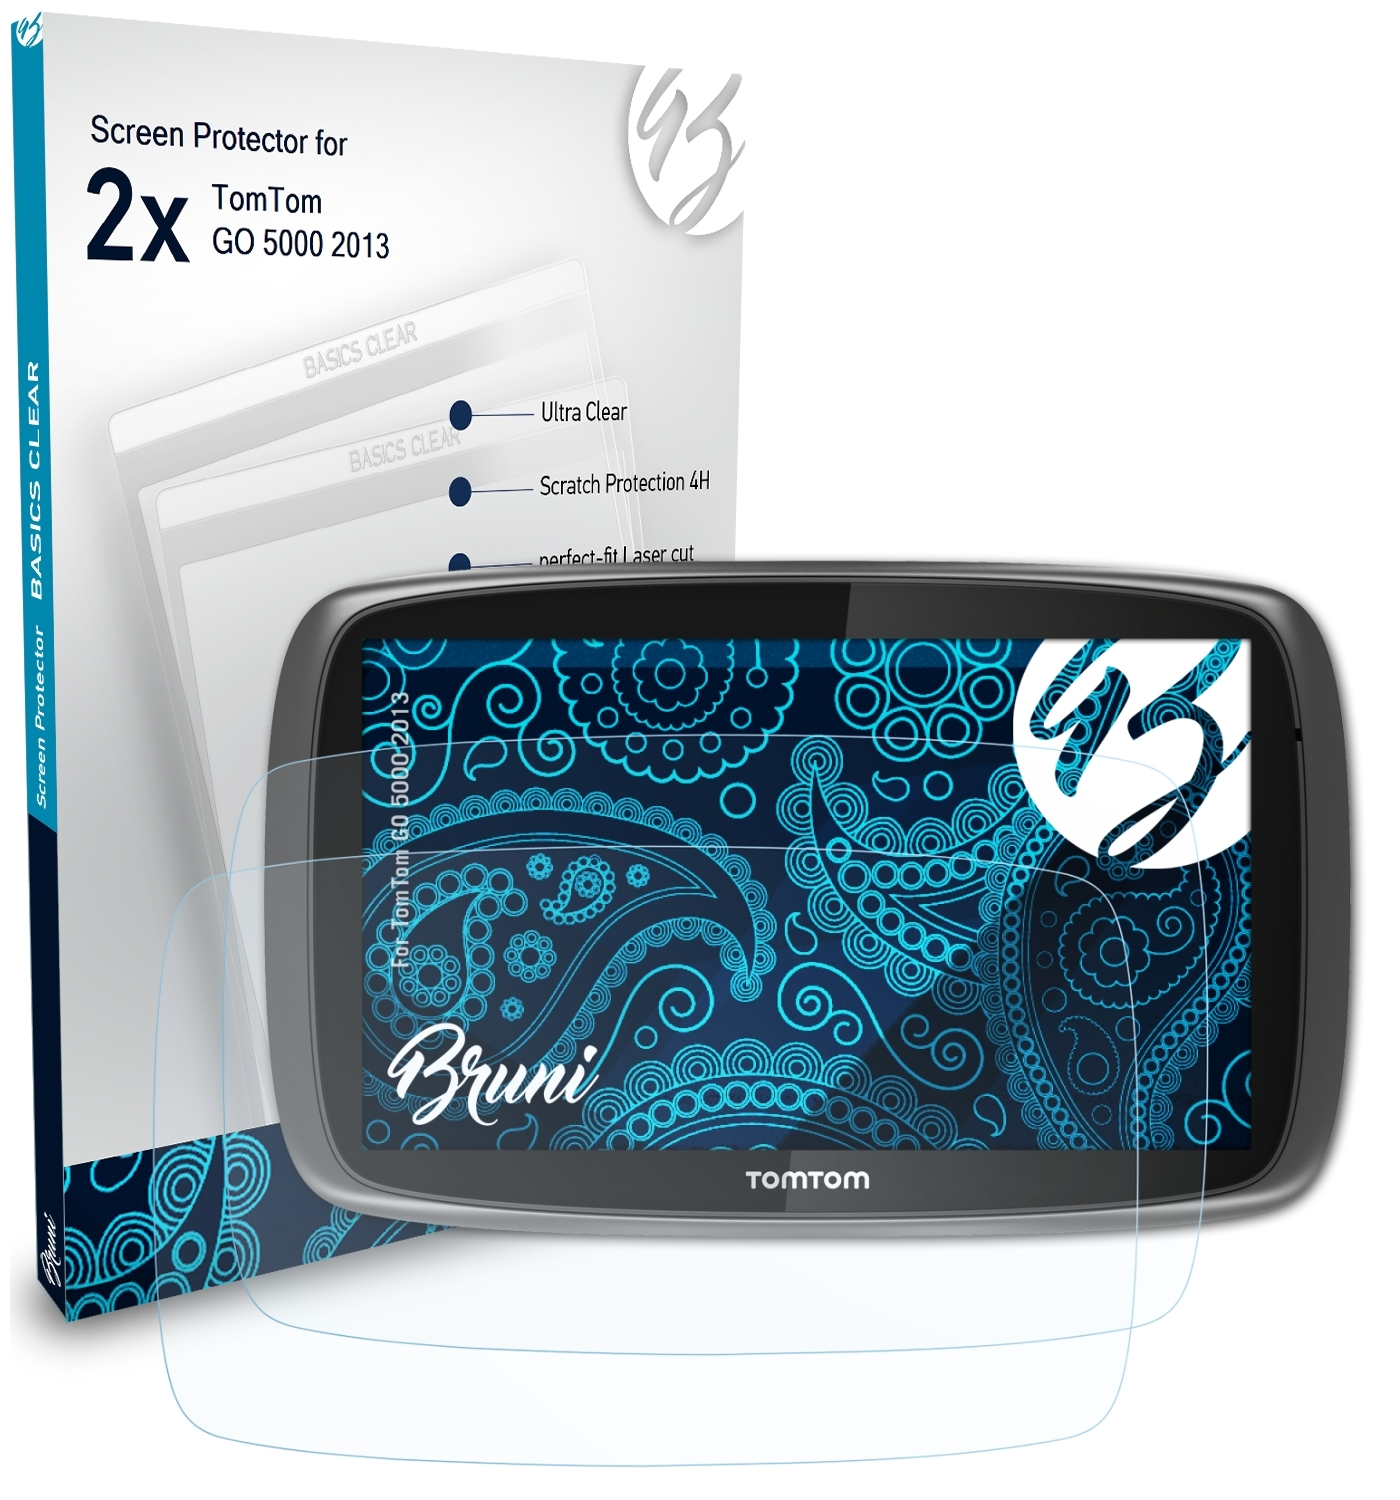 BRUNI 2x Basics-Clear GO (2013)) TomTom 5000 Schutzfolie(für